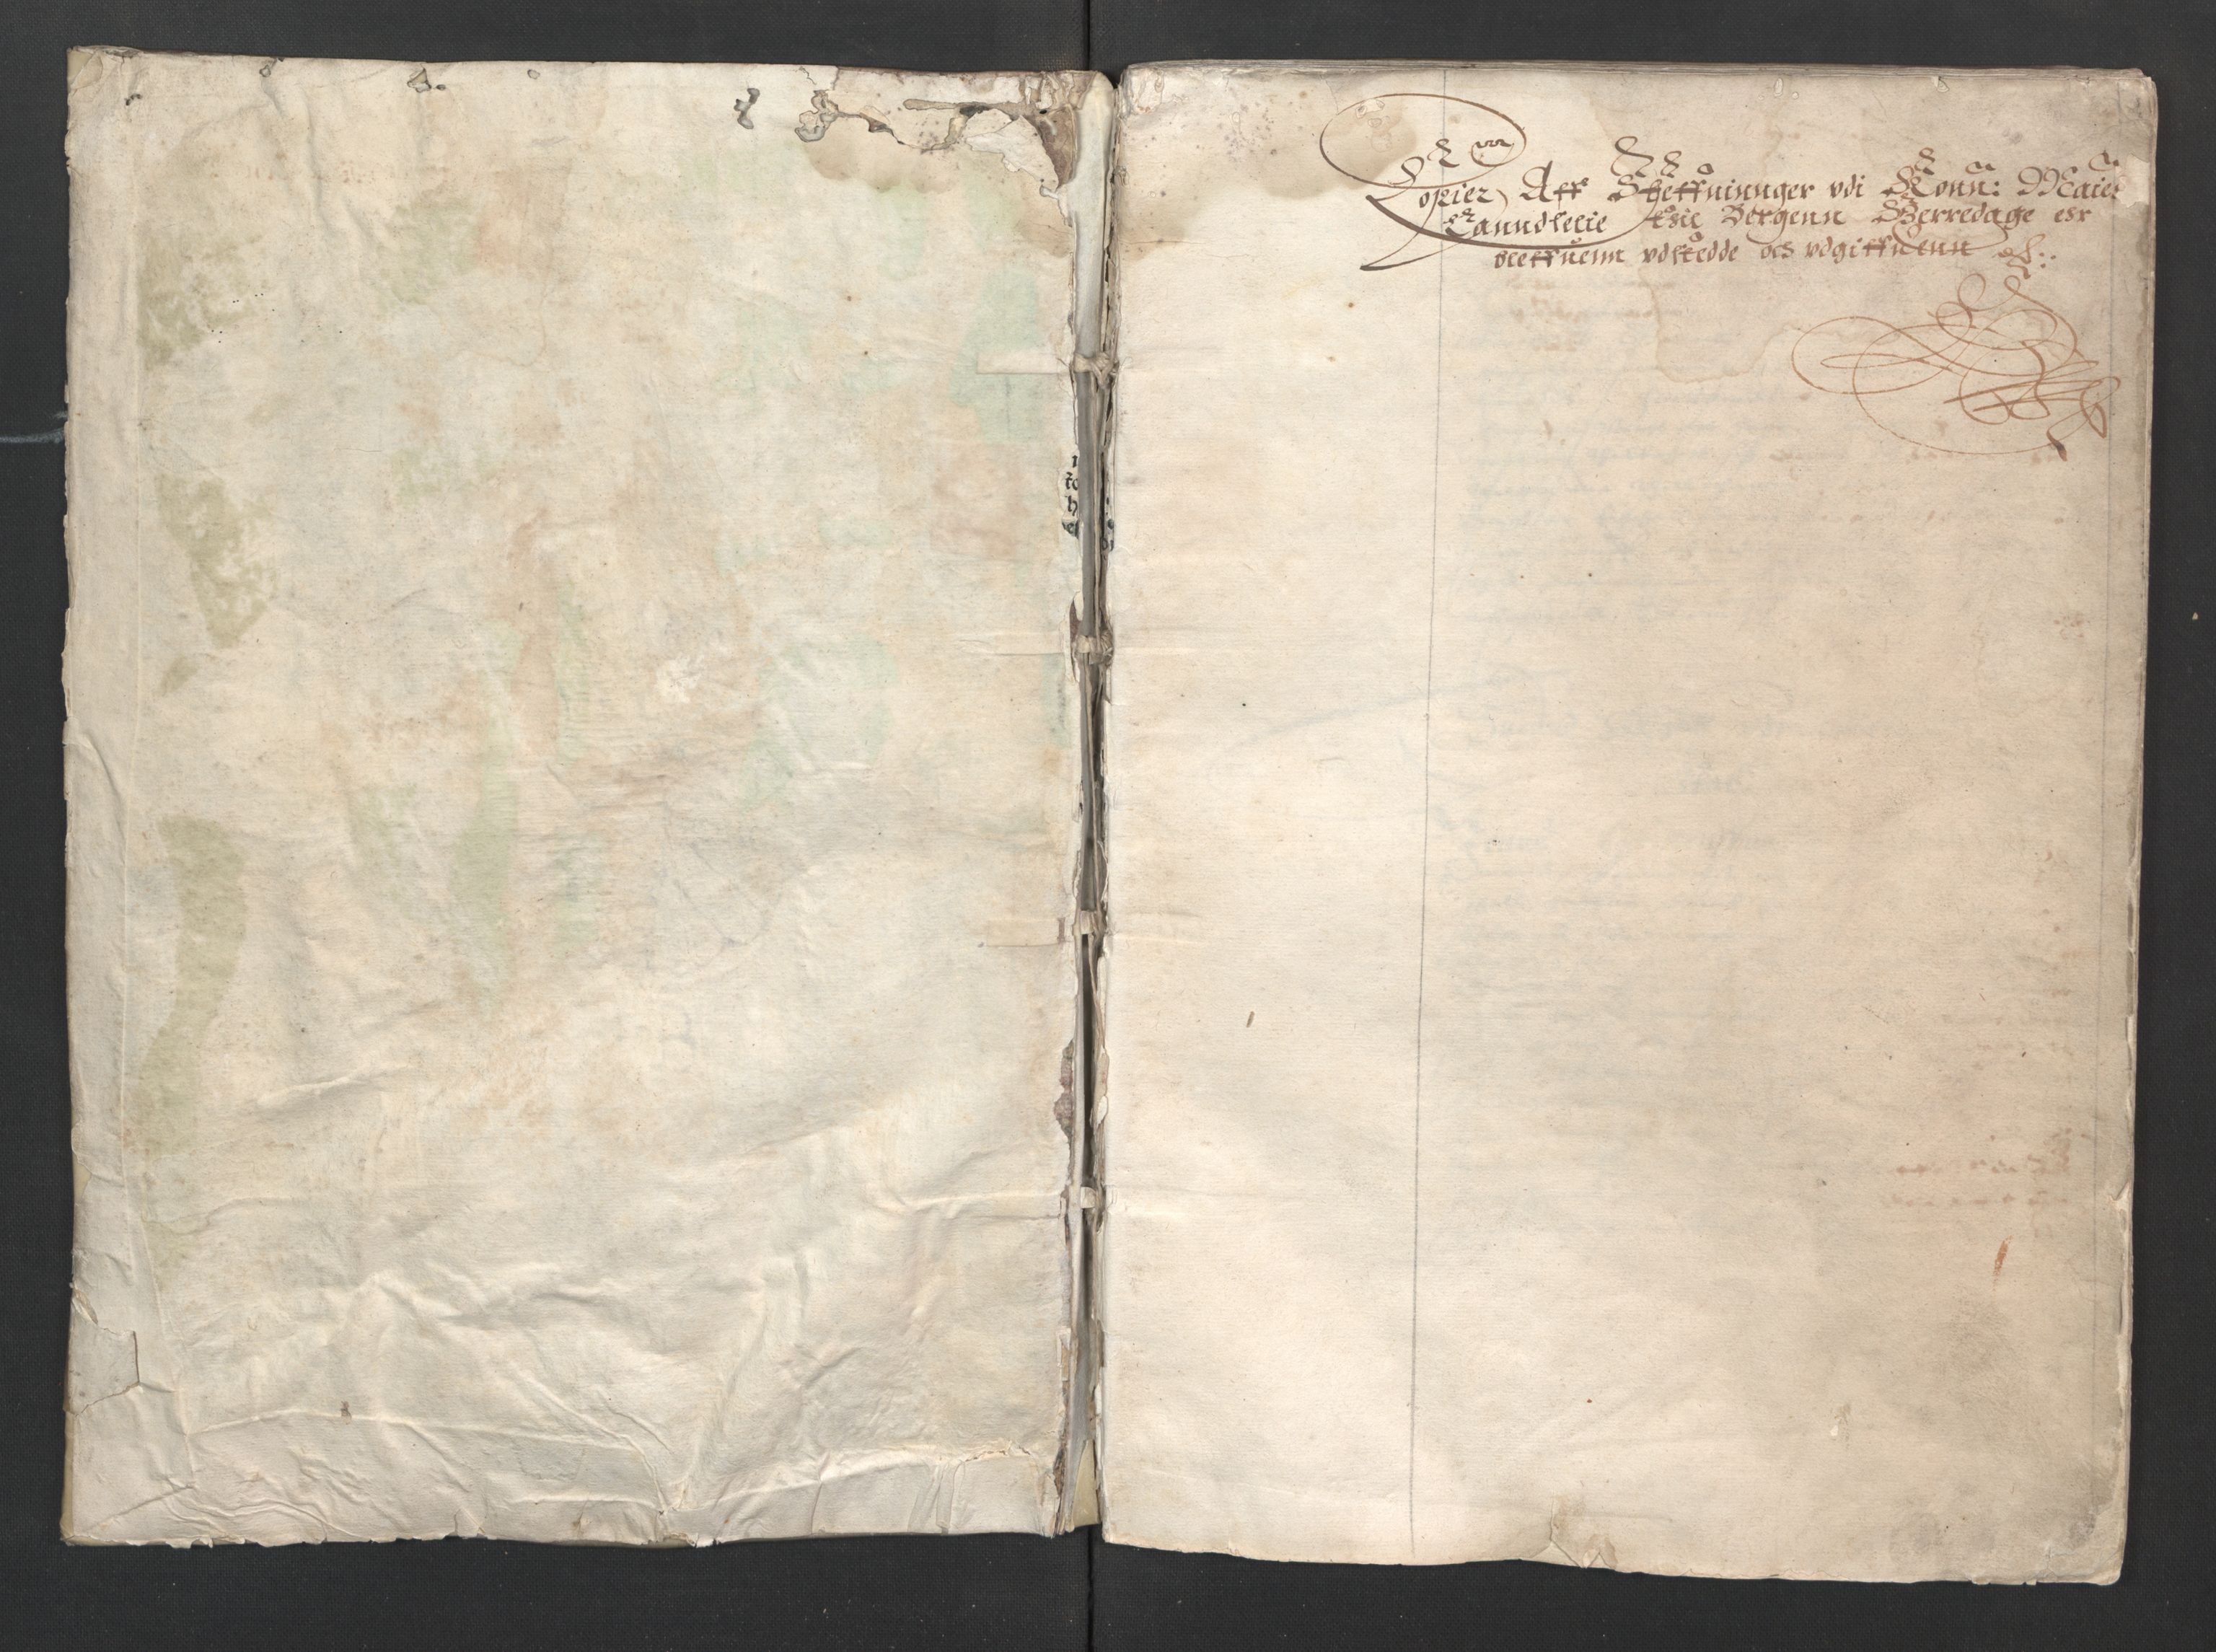 Herredagen 1539-1664  (Kongens Retterting), RA/EA-2882/A/L0013: Dombok   Avsiktsbok   Stevningsbok, 1622